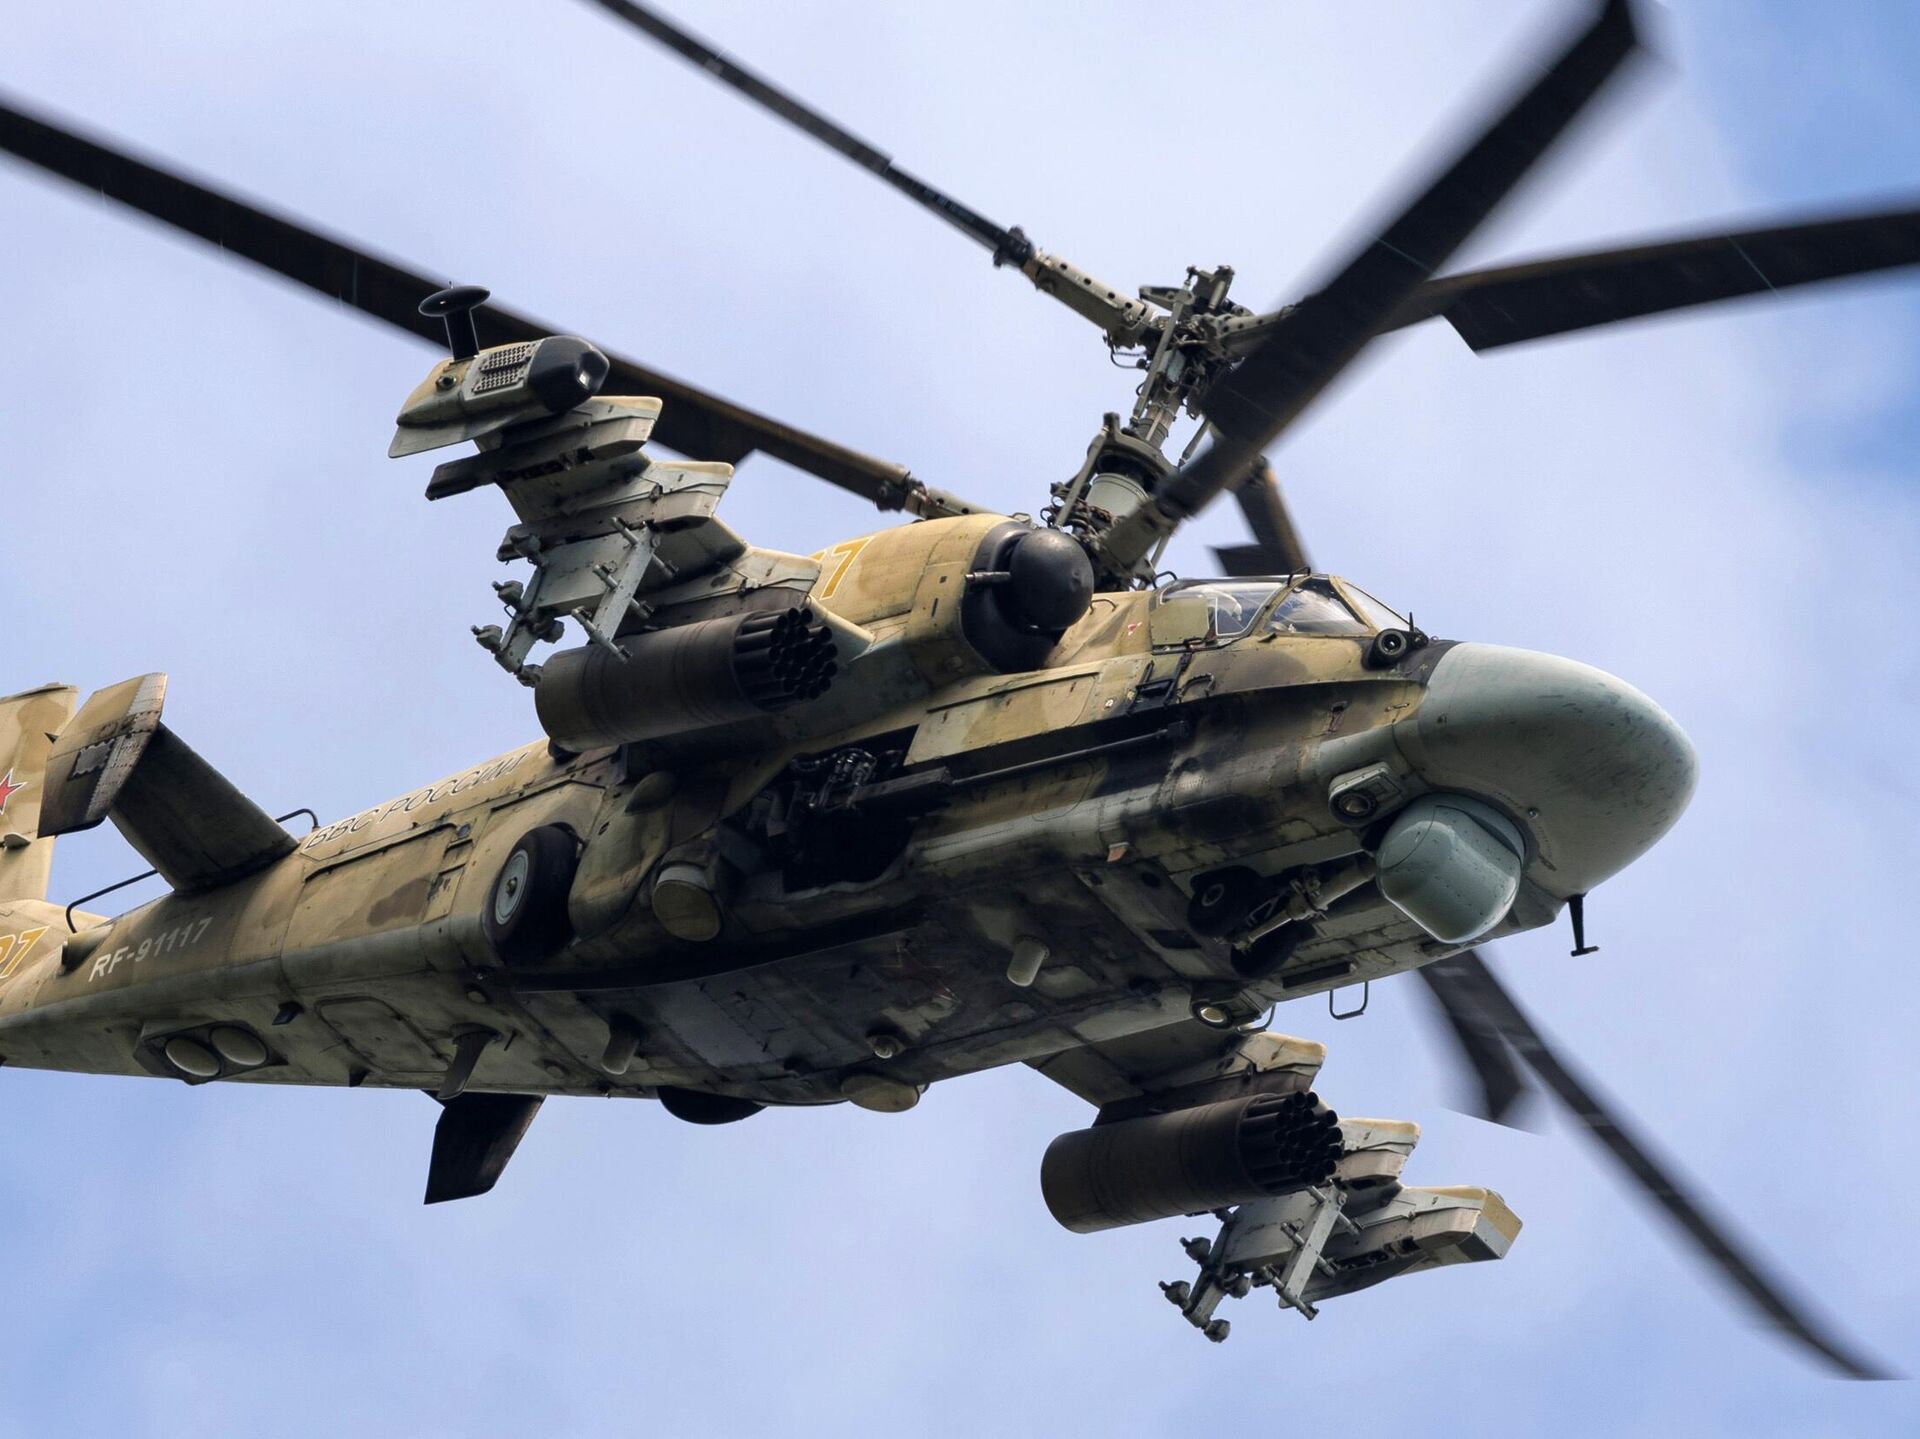 Top 10 des hélicoptères militaires les plus rapides au monde - 06.02.2018,  Sputnik Afrique